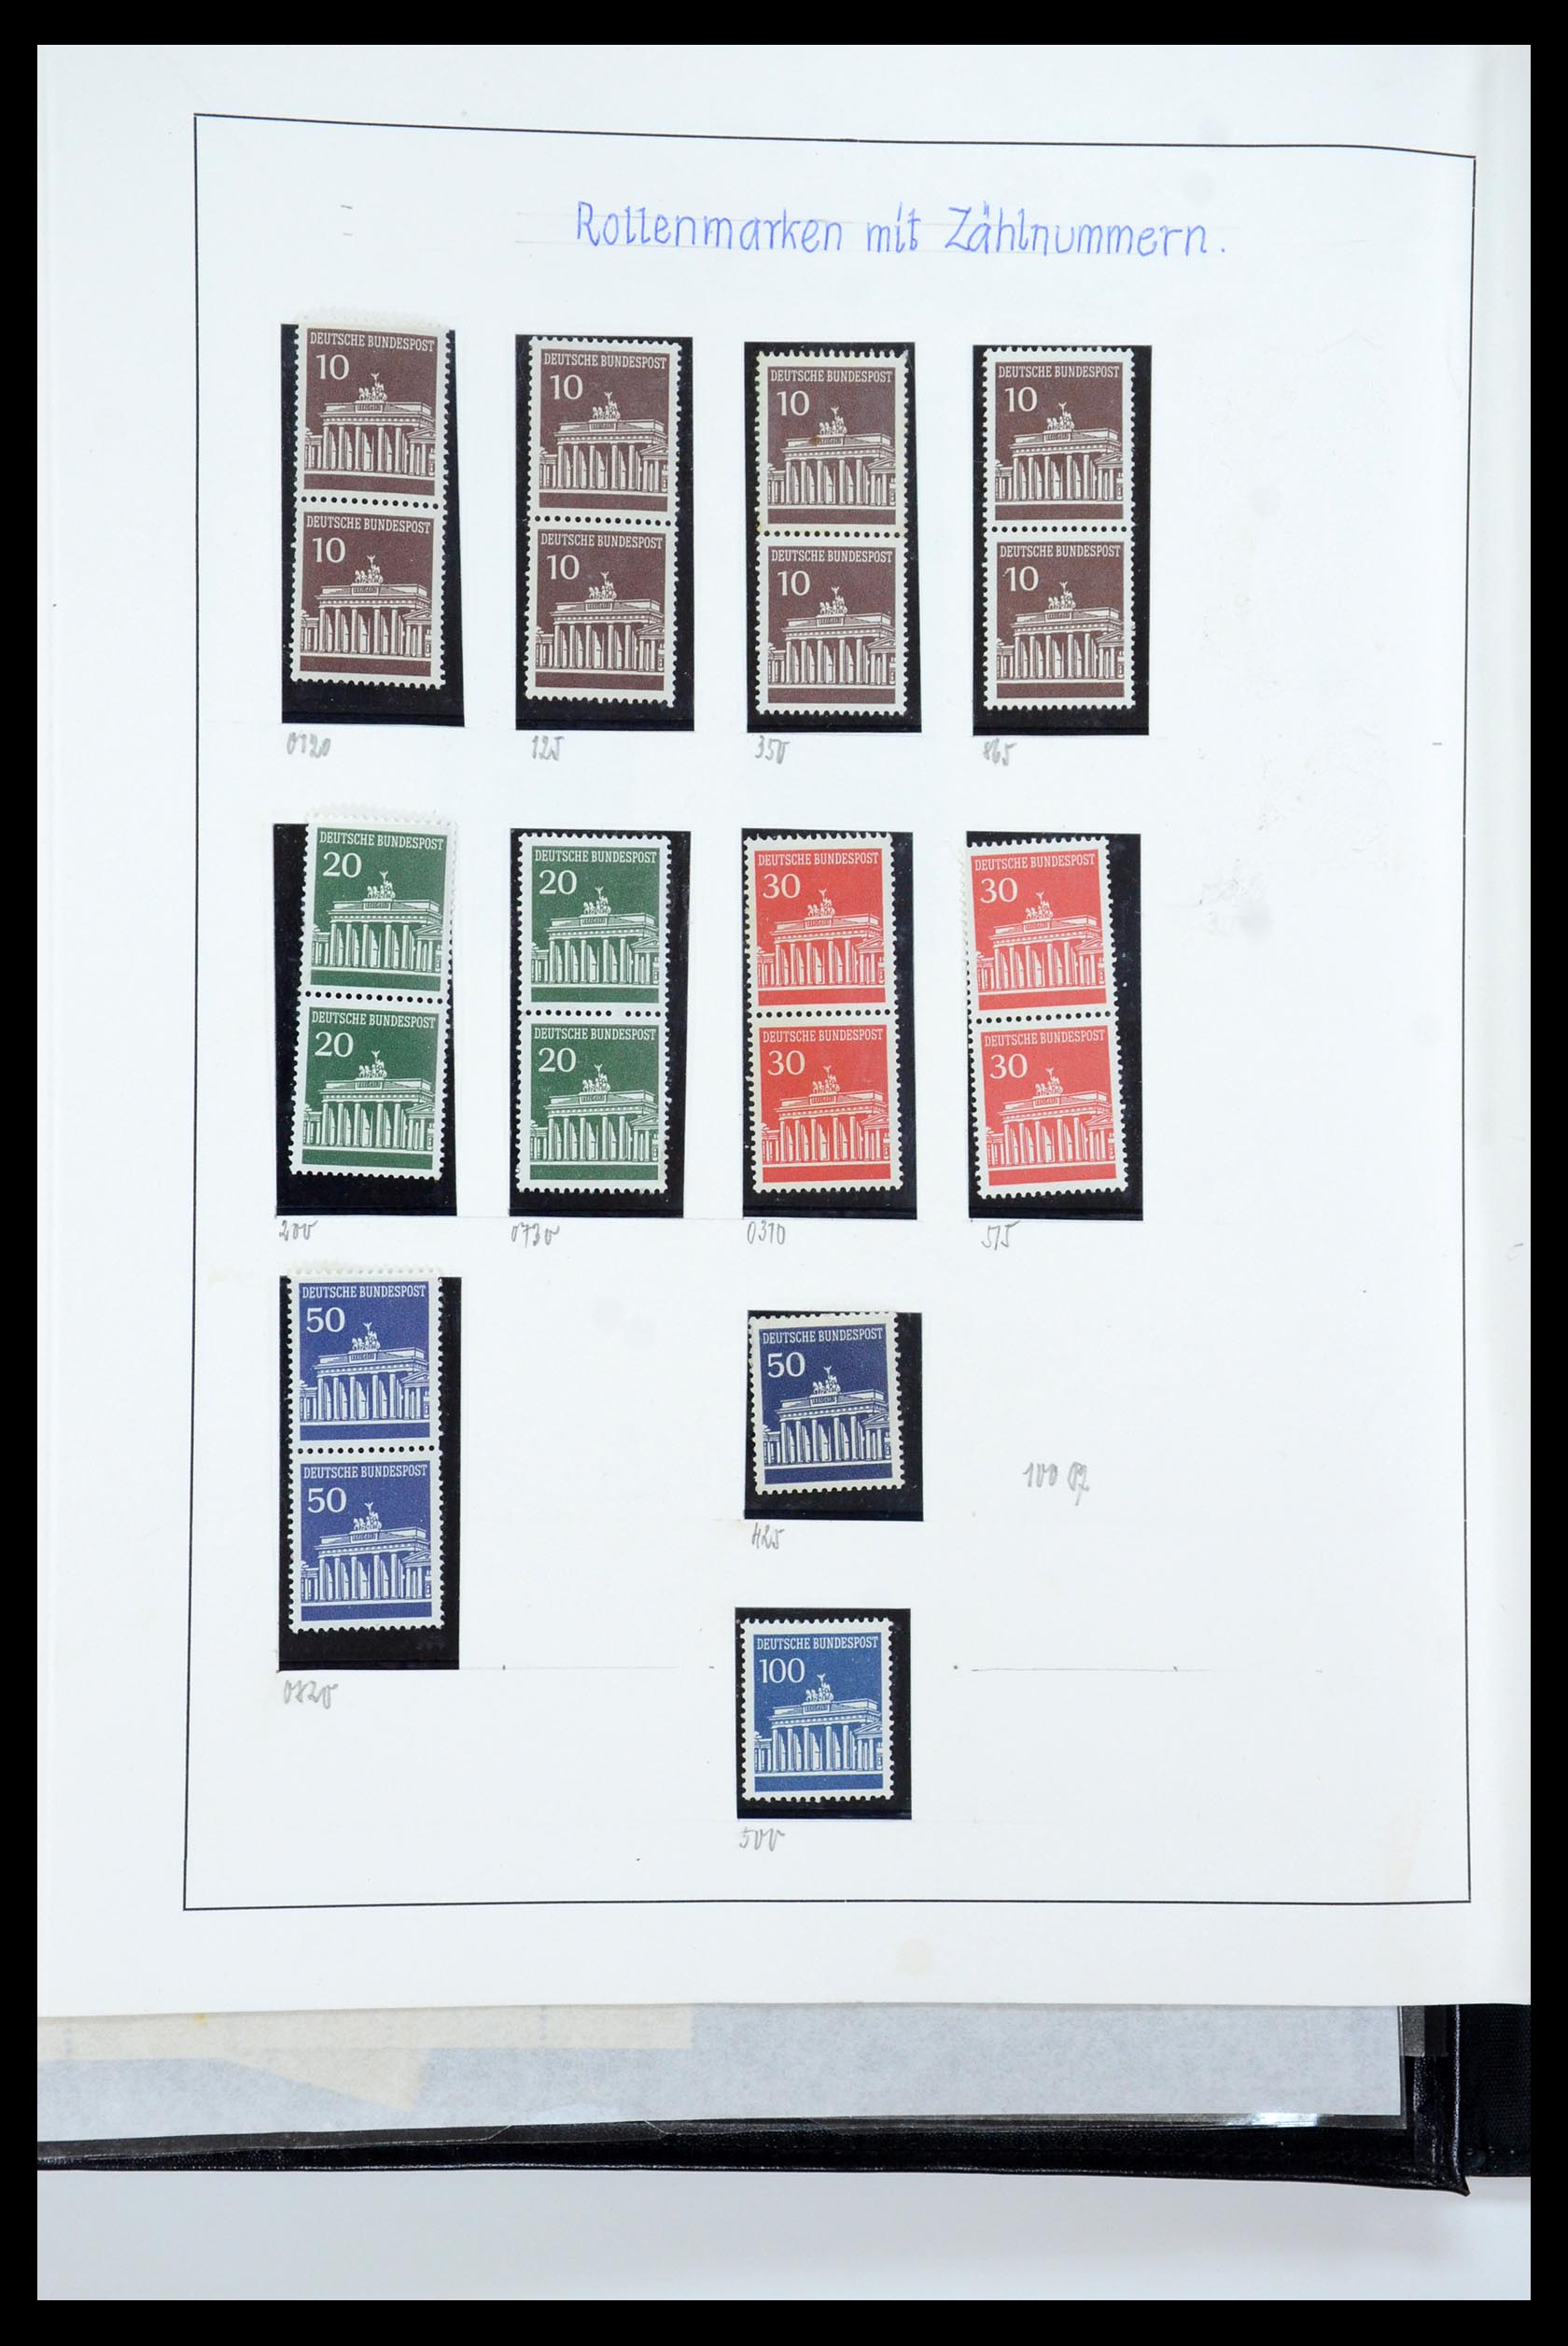 35729 058 - Postzegelverzameling 35729 Duitsland combinaties 1920-1980.